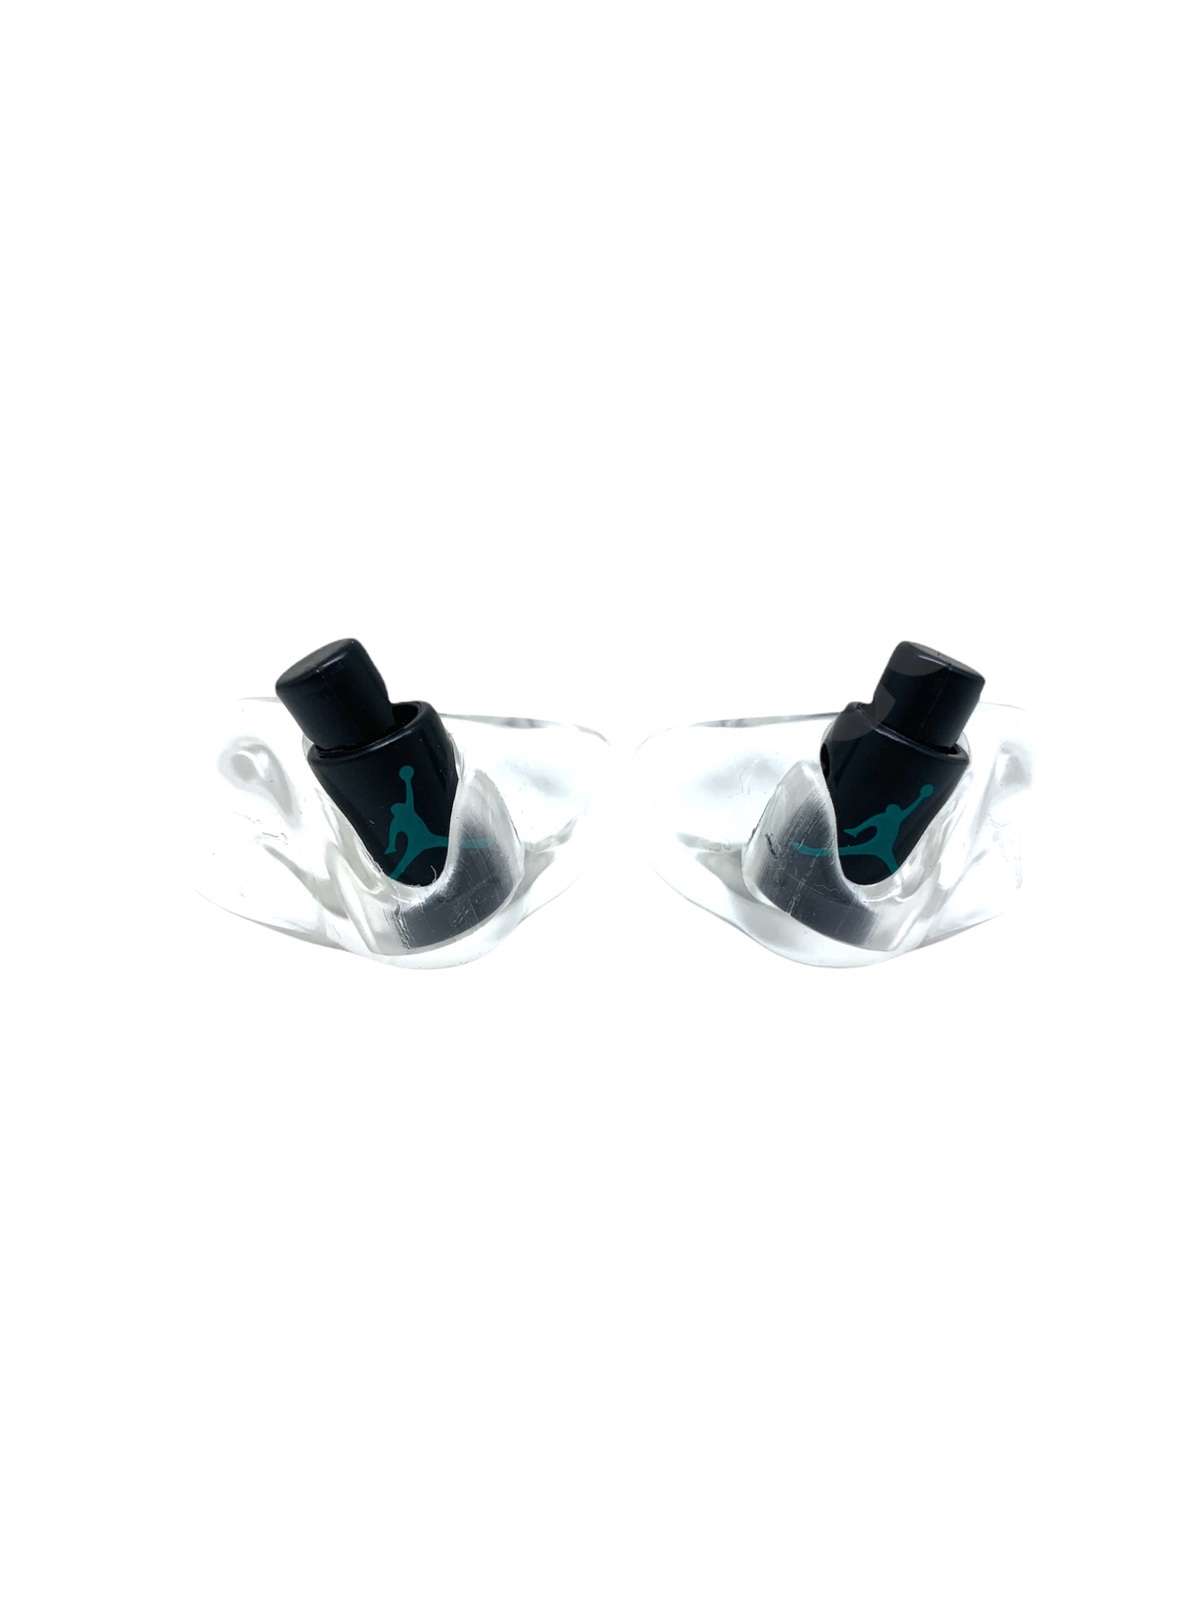 Air Jordan 5 Sneaker Lace Locks (Navy/ and 50 similar items